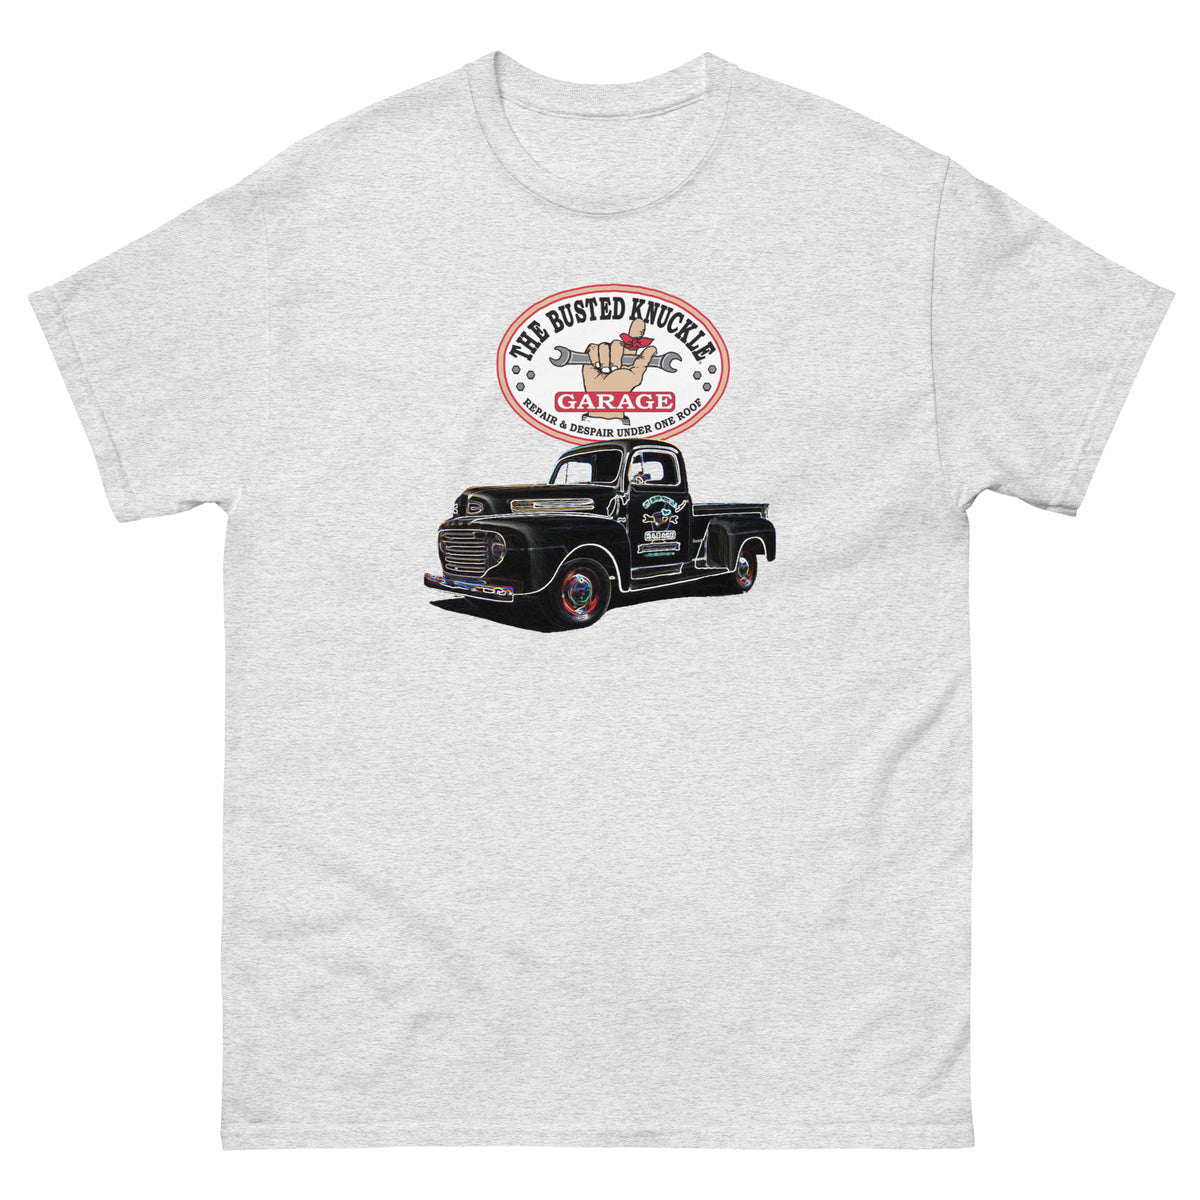 Busted Knuckle Garage Vintage Shop Truck T-Shirt